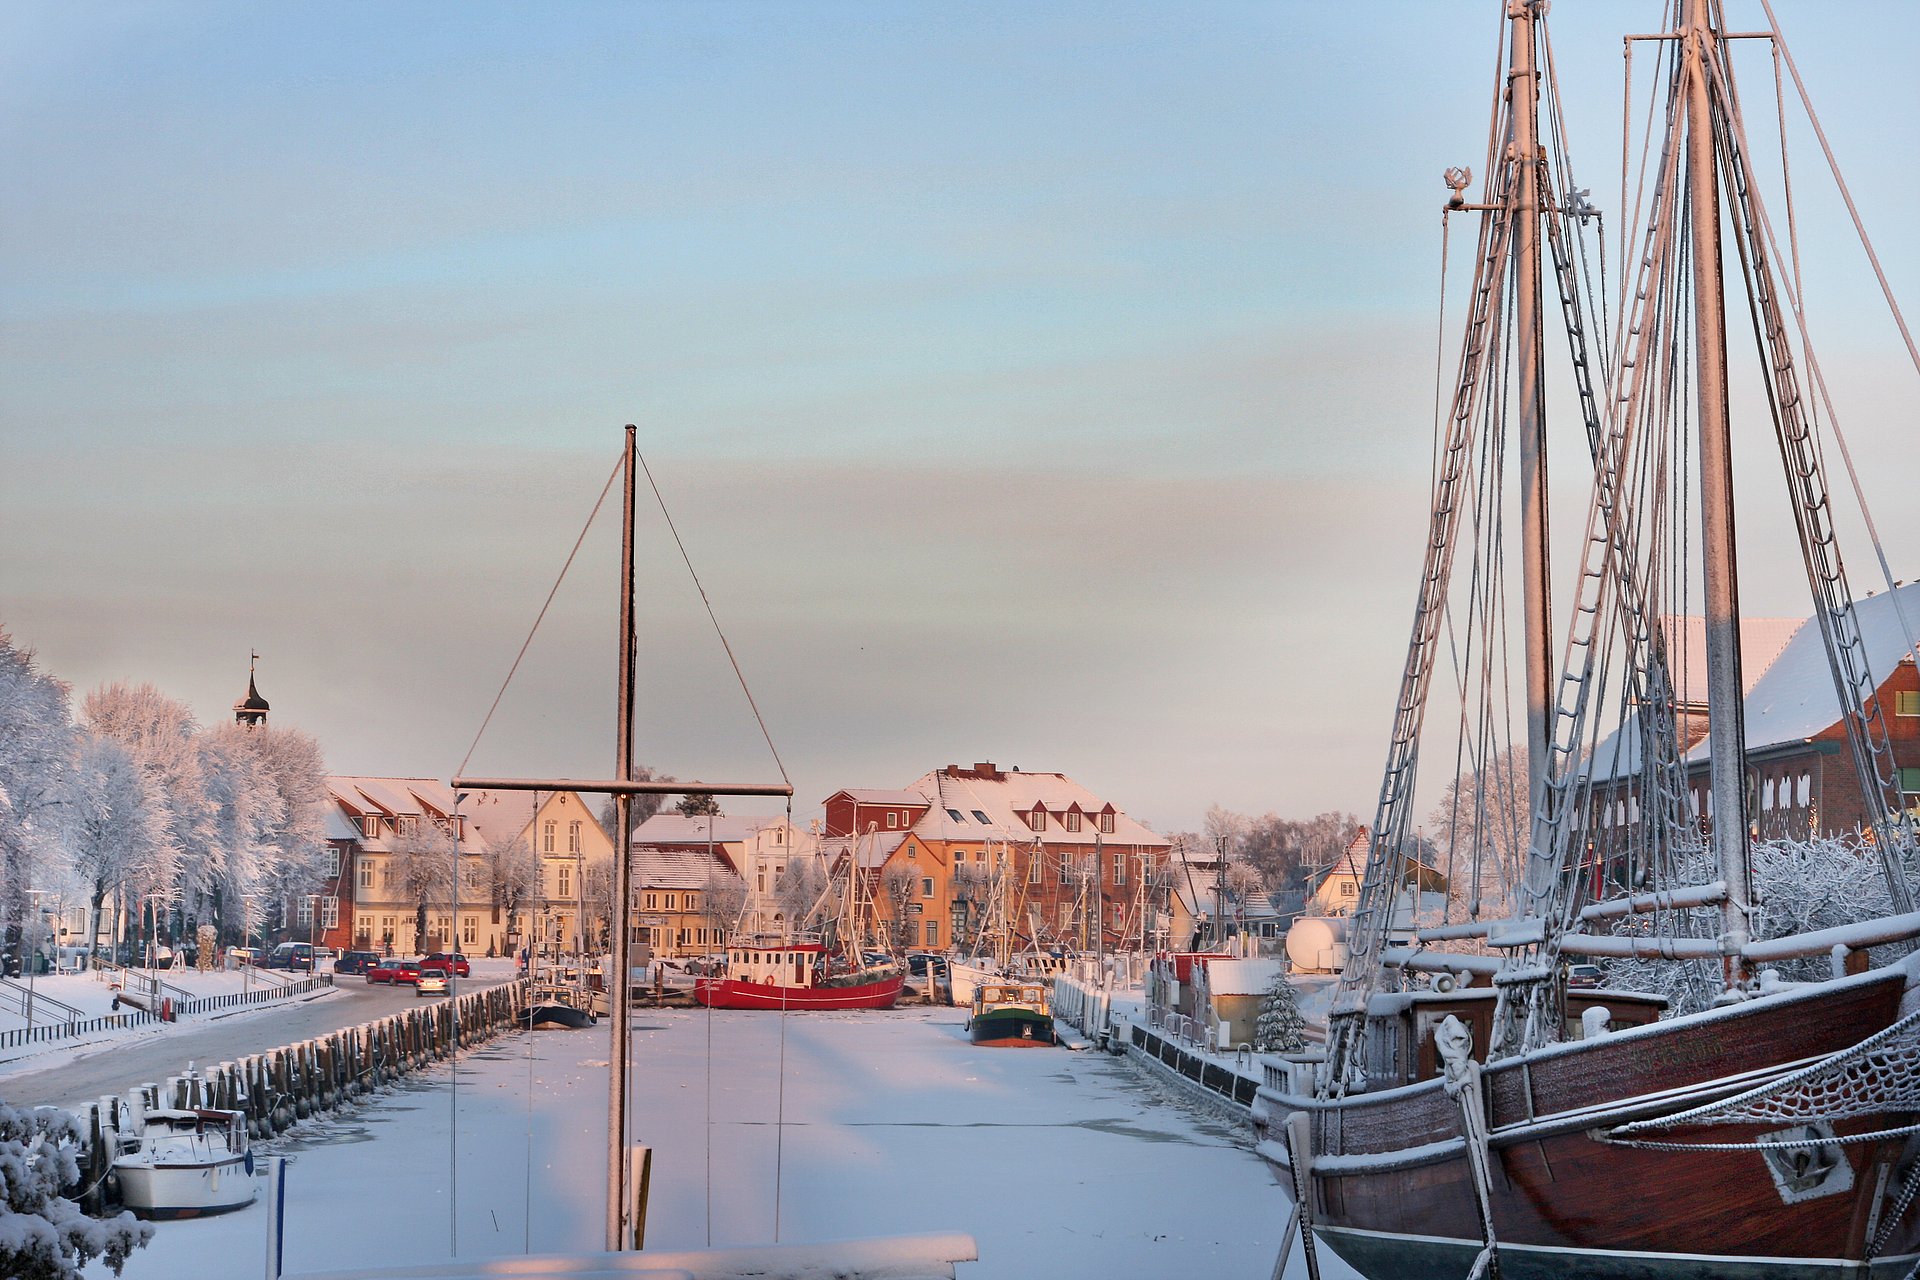 Tönninger Hafen im Winter